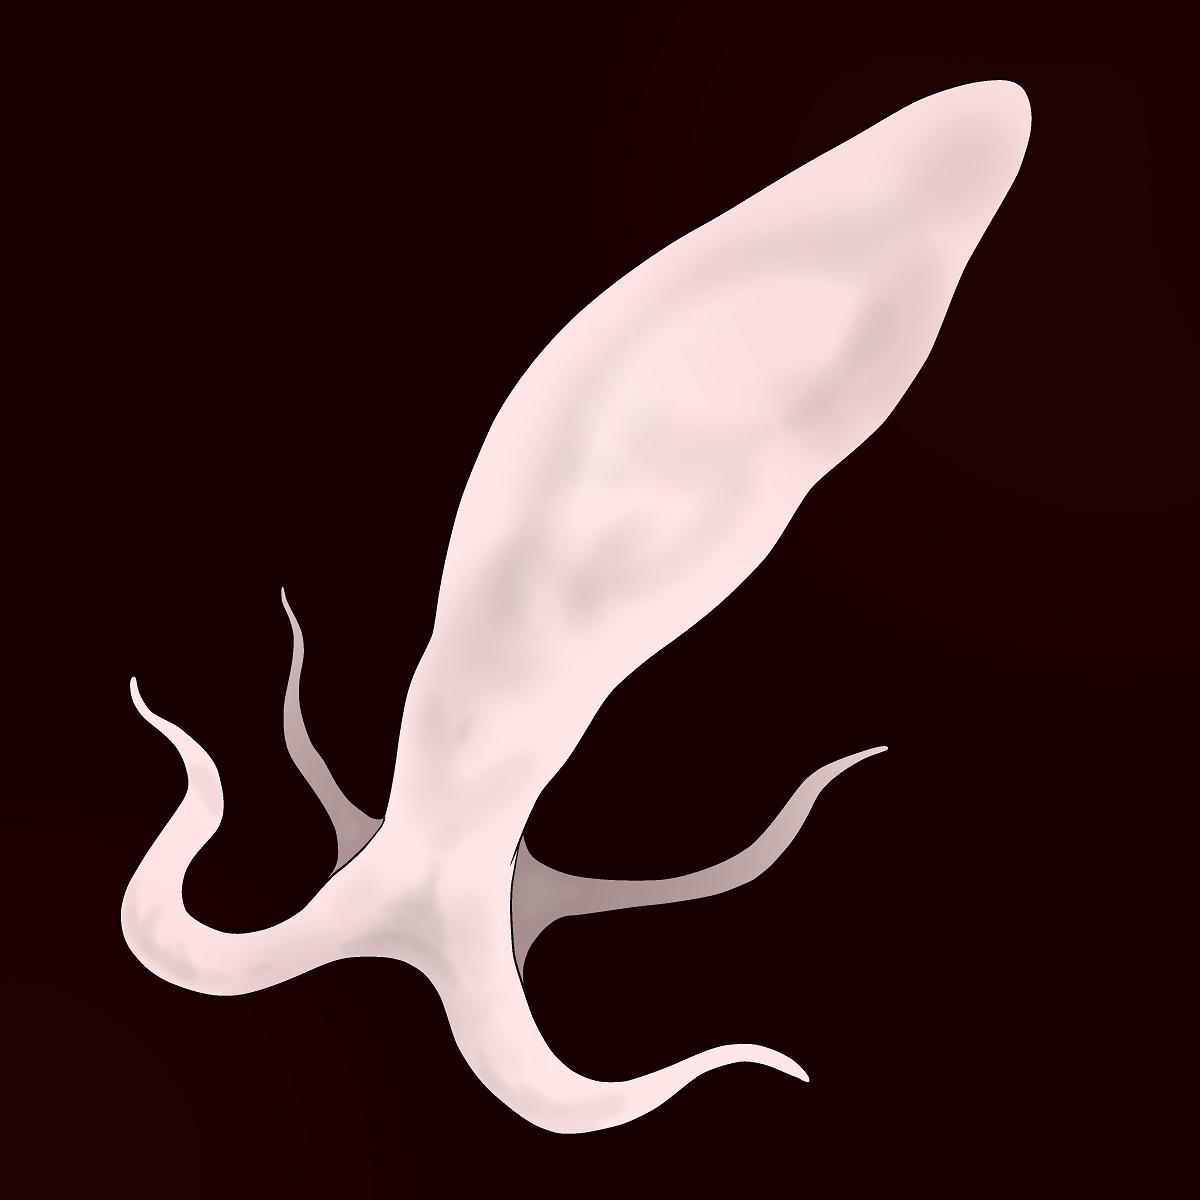 Sperm Creature on Male 1